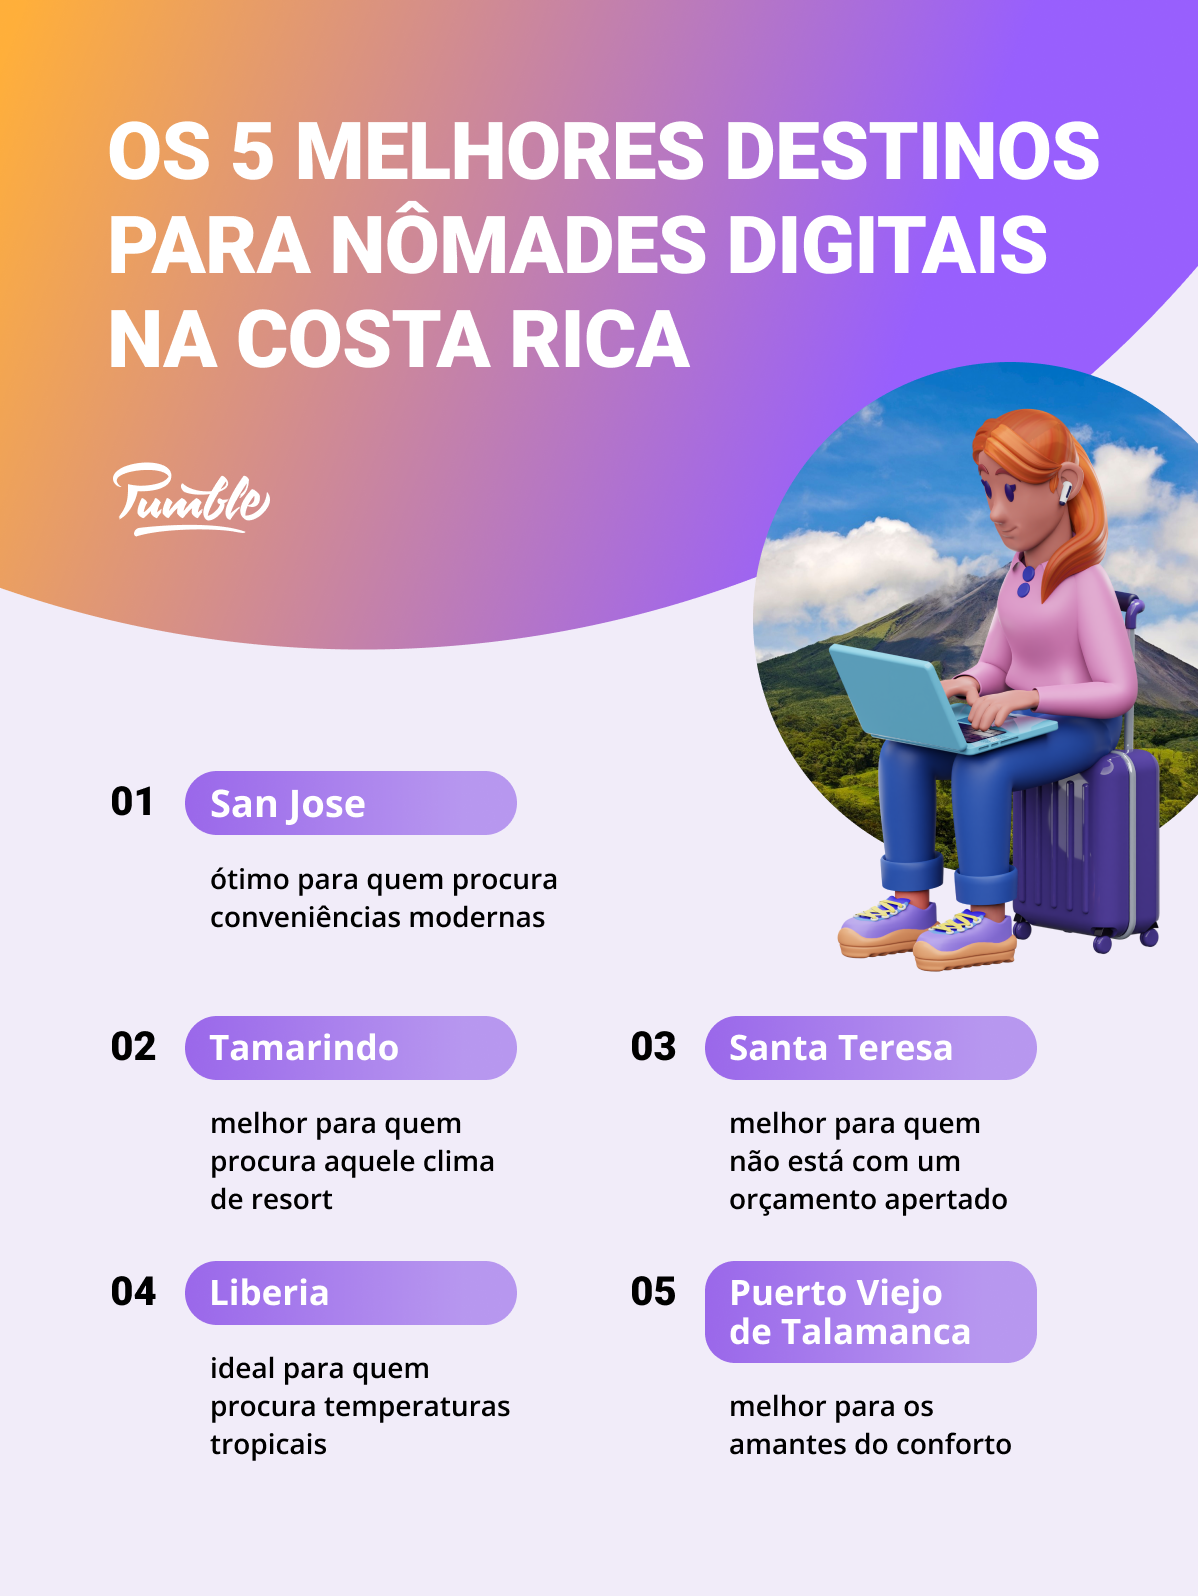 Os 5 melhores destinos para nômades digitais na Costa Rica